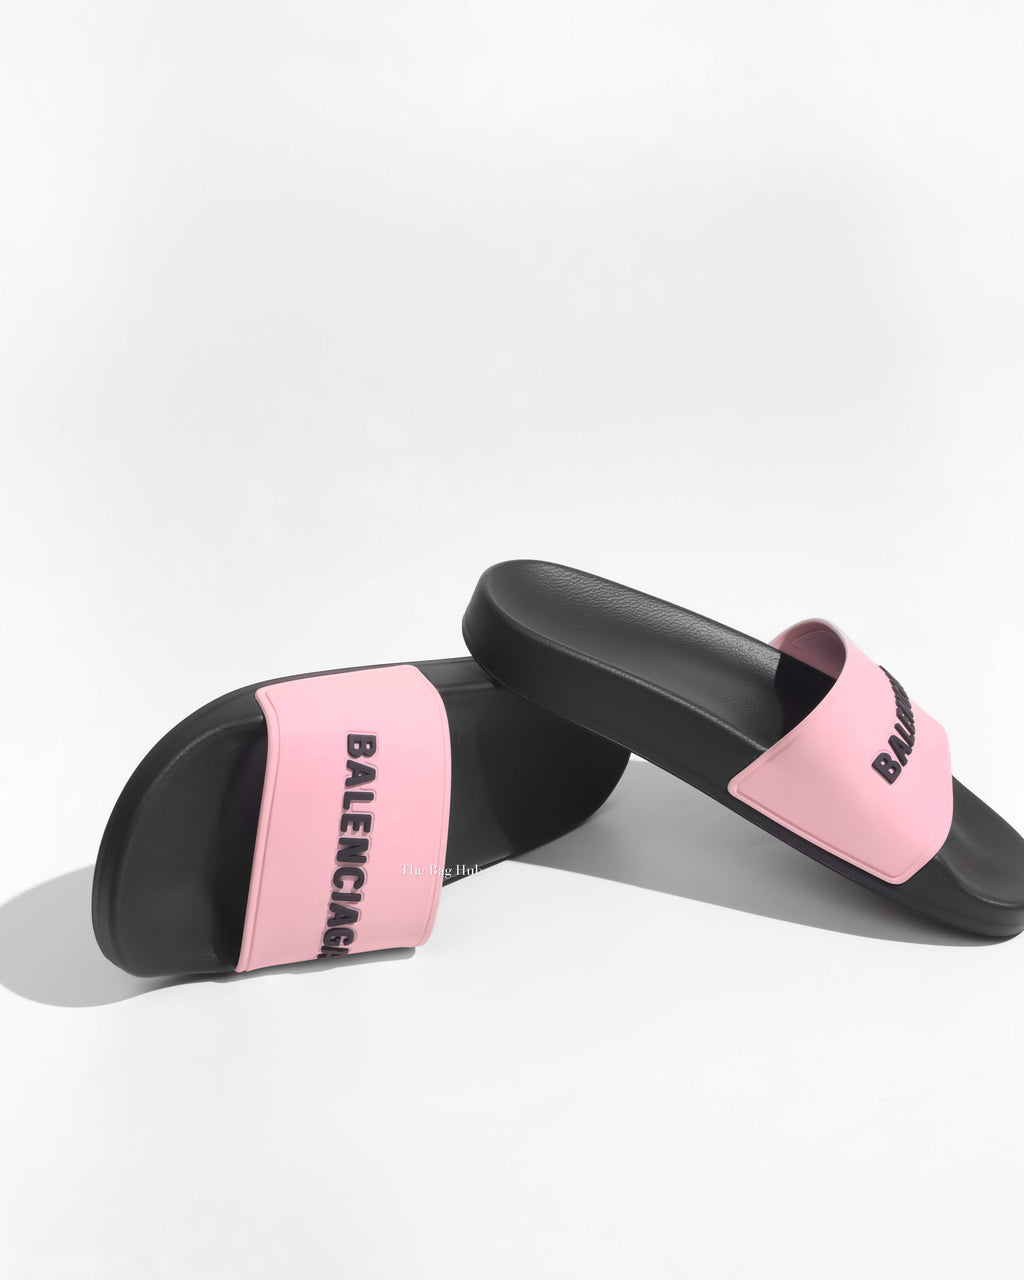 Balenciaga Black/Pink Rubber Women's Pool Slides Size 35-1